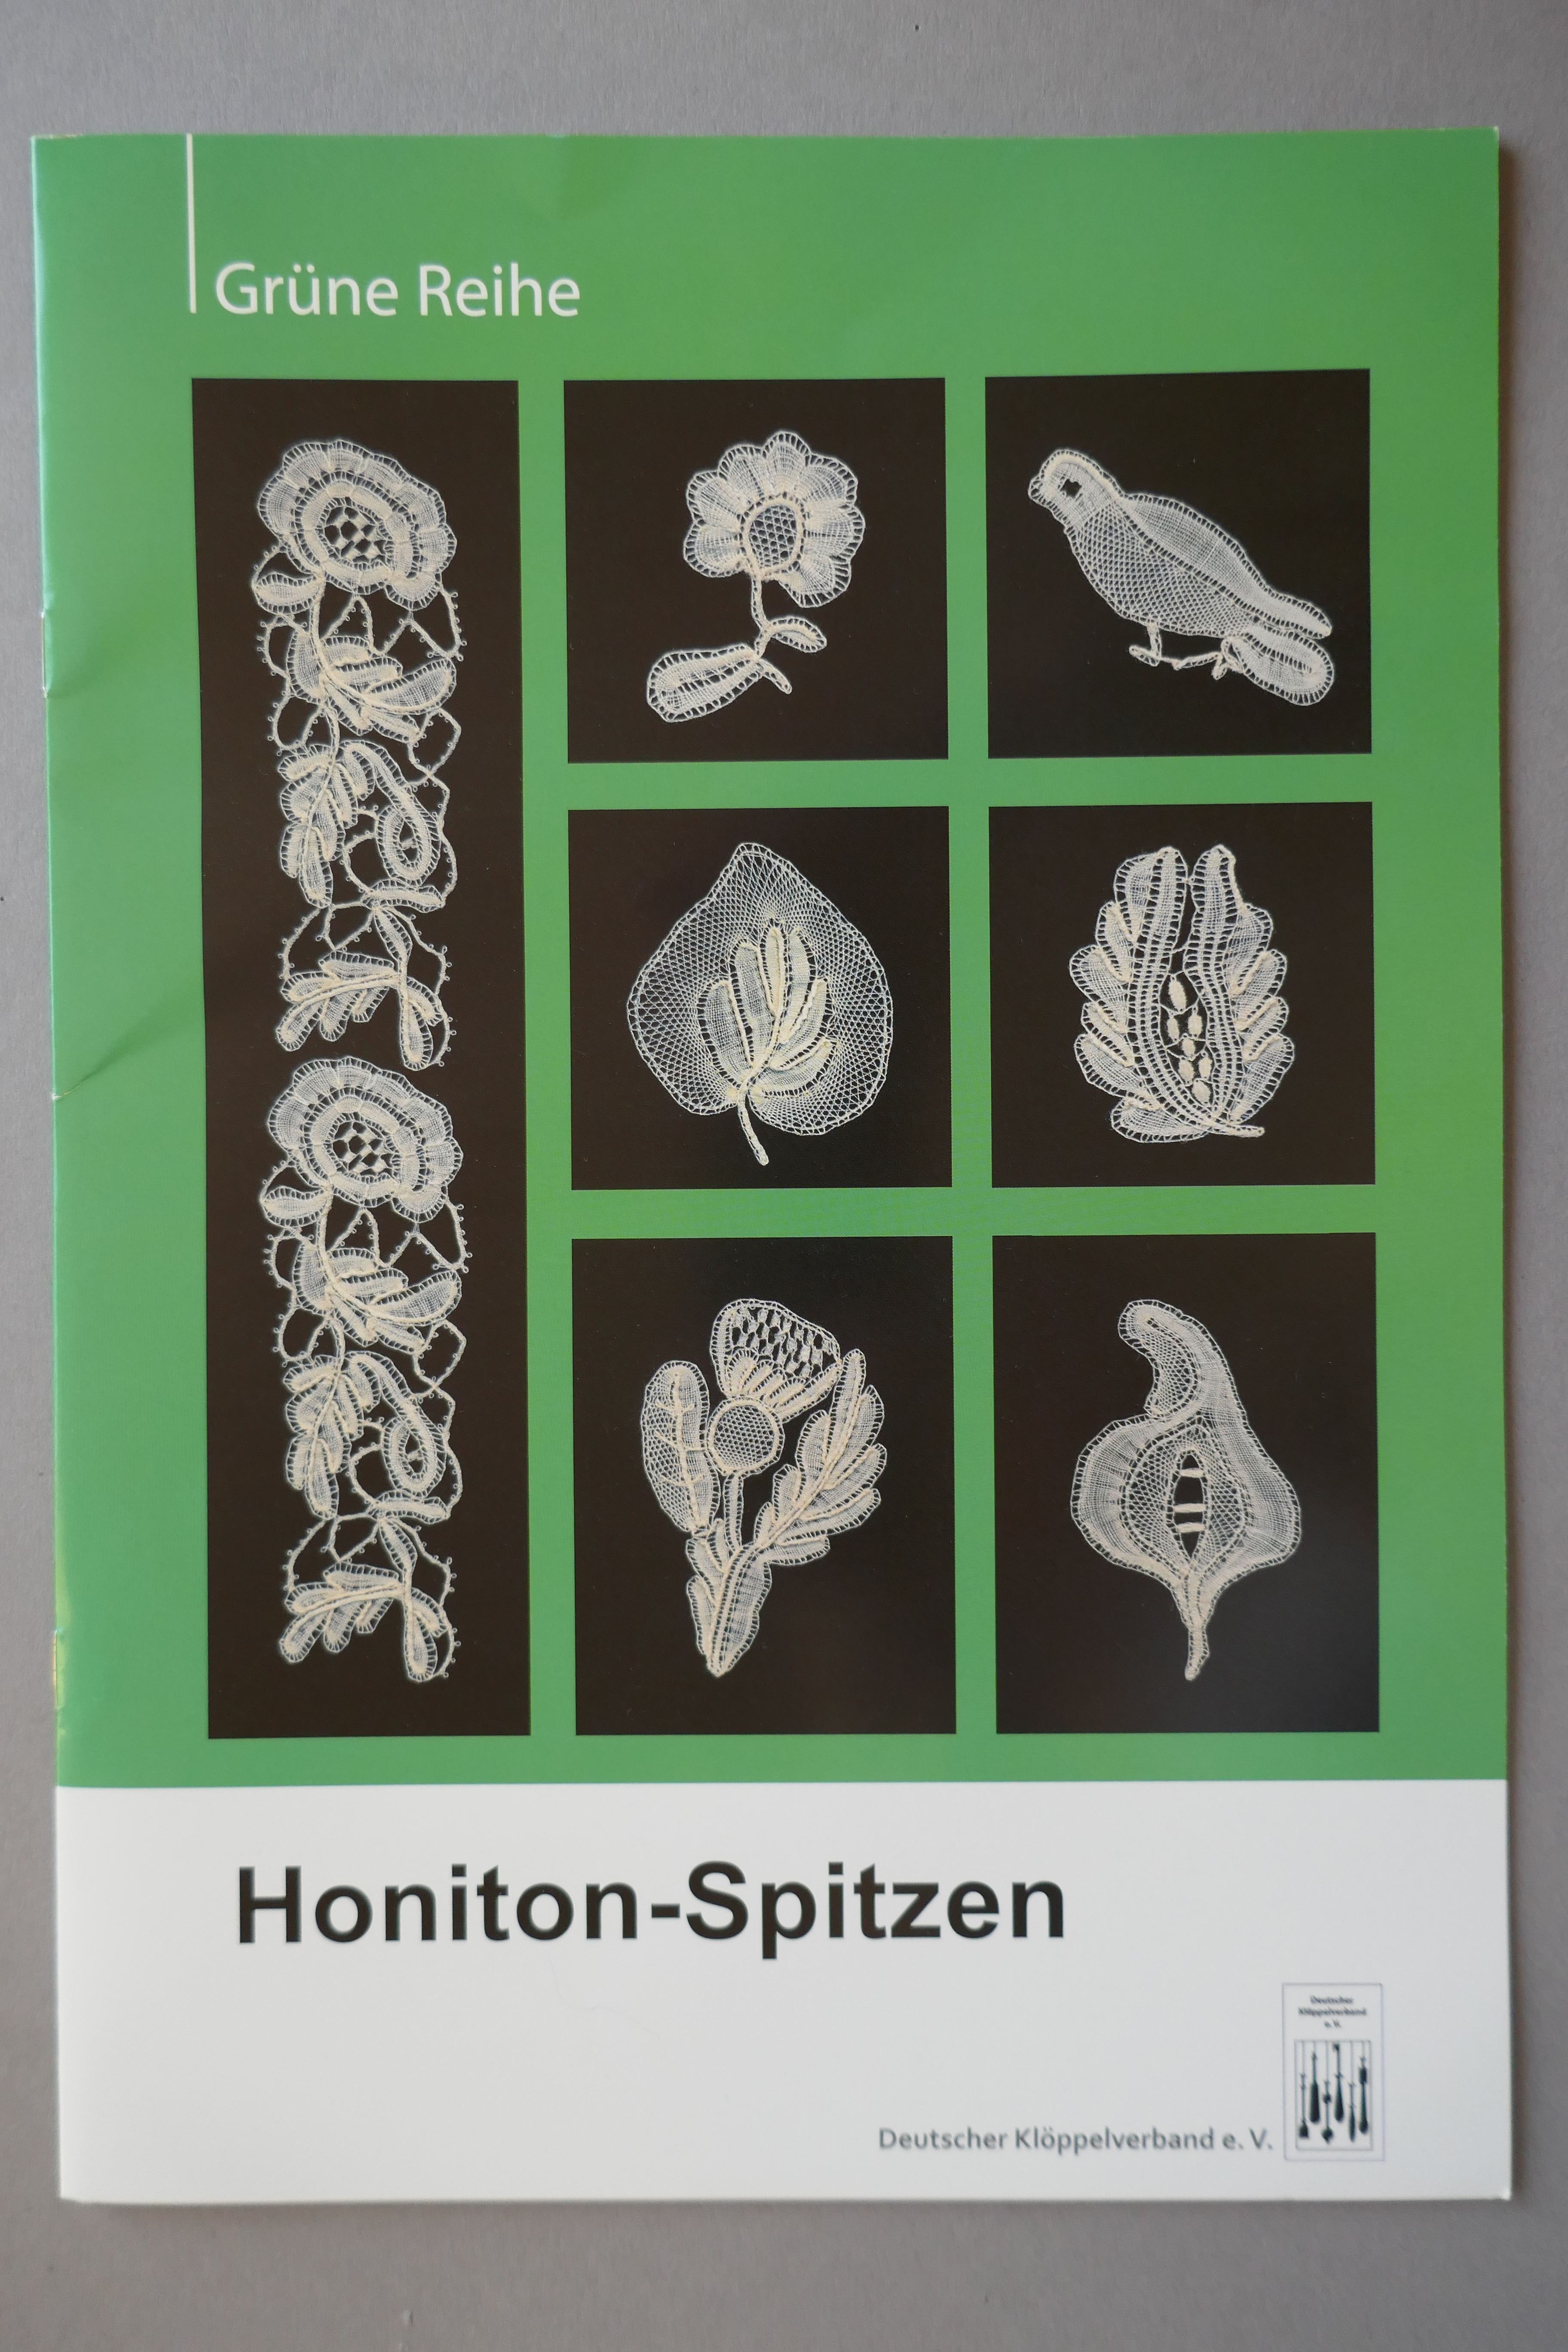 Honiton-Spitzen (grüne Reihe)